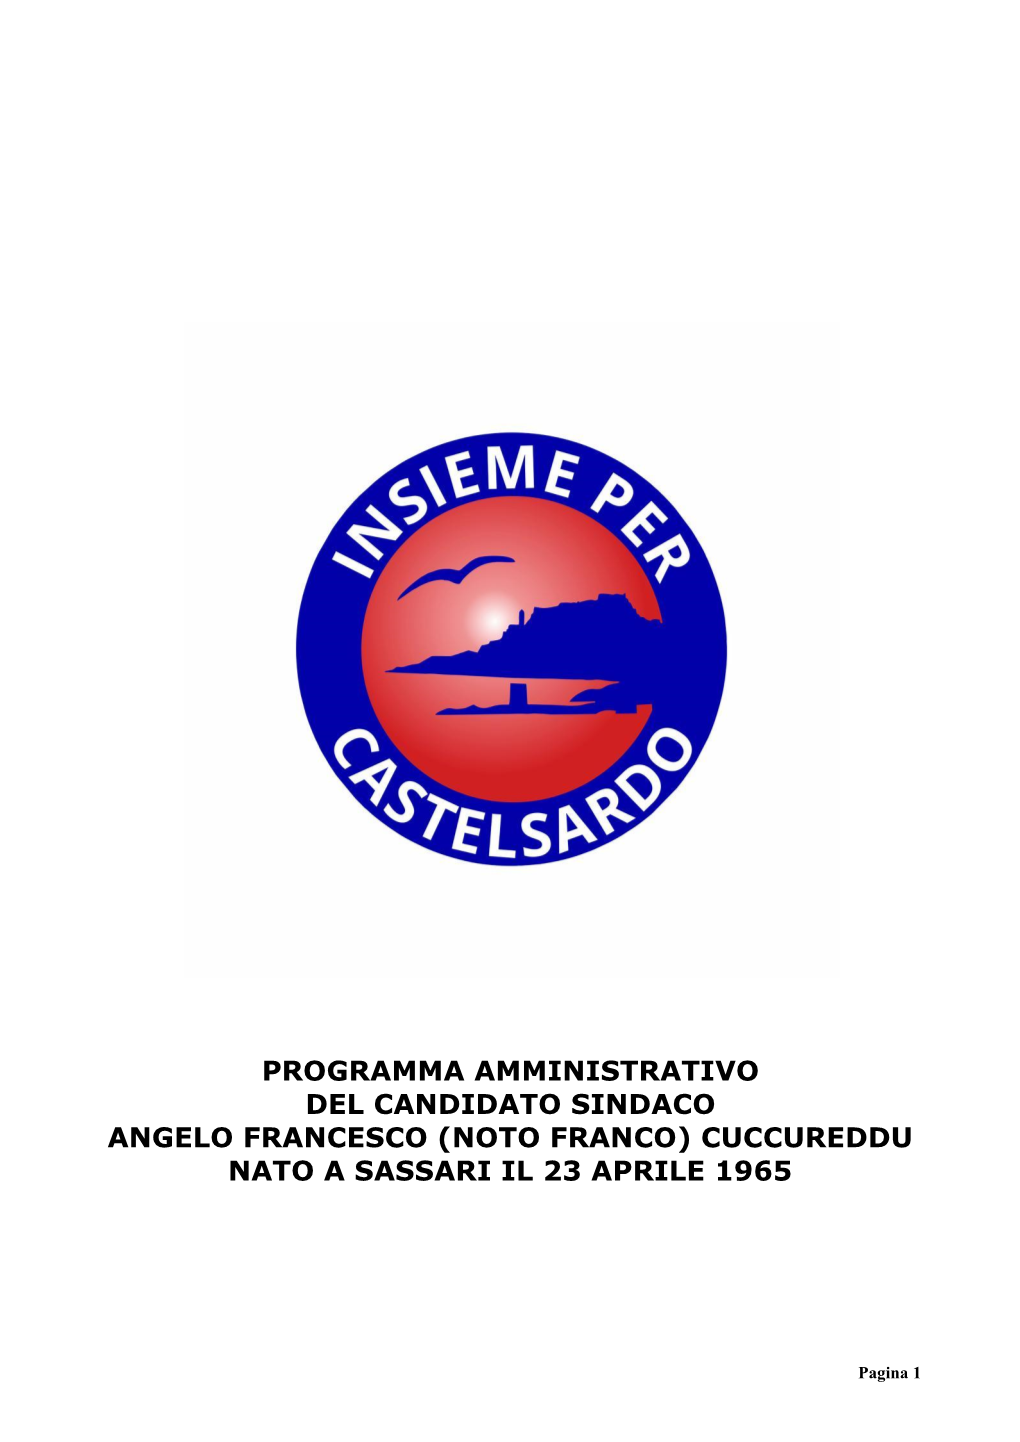 Programma Amministrativo Del Candidato Sindaco Angelo Francesco (Noto Franco) Cuccureddu Nato a Sassari Il 23 Aprile 1965